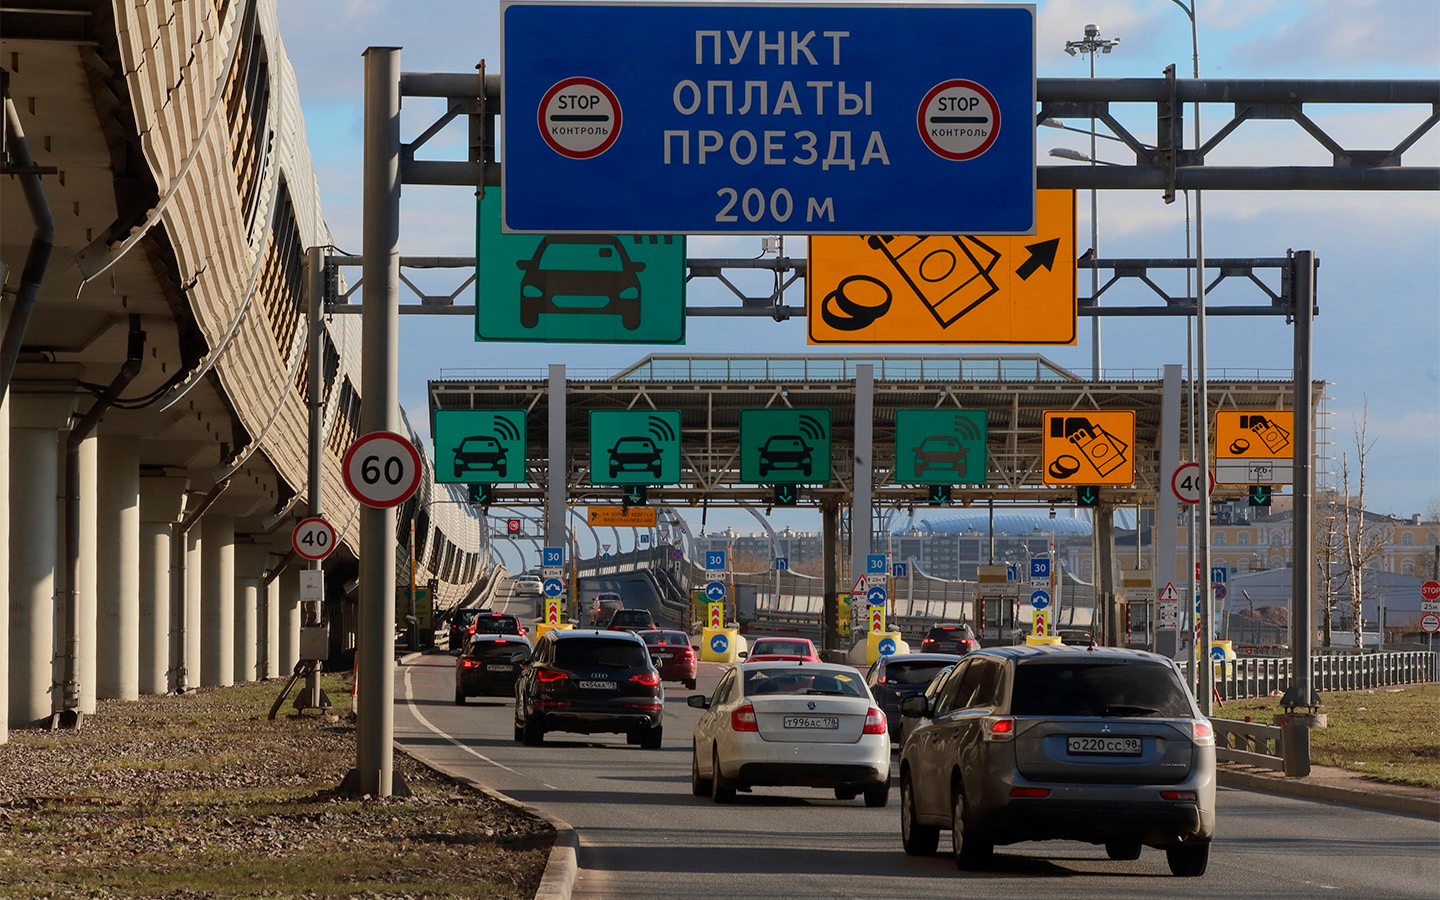 Цена проезда по платной дороге москва санкт петербург на легковой машине с транспондером зсд